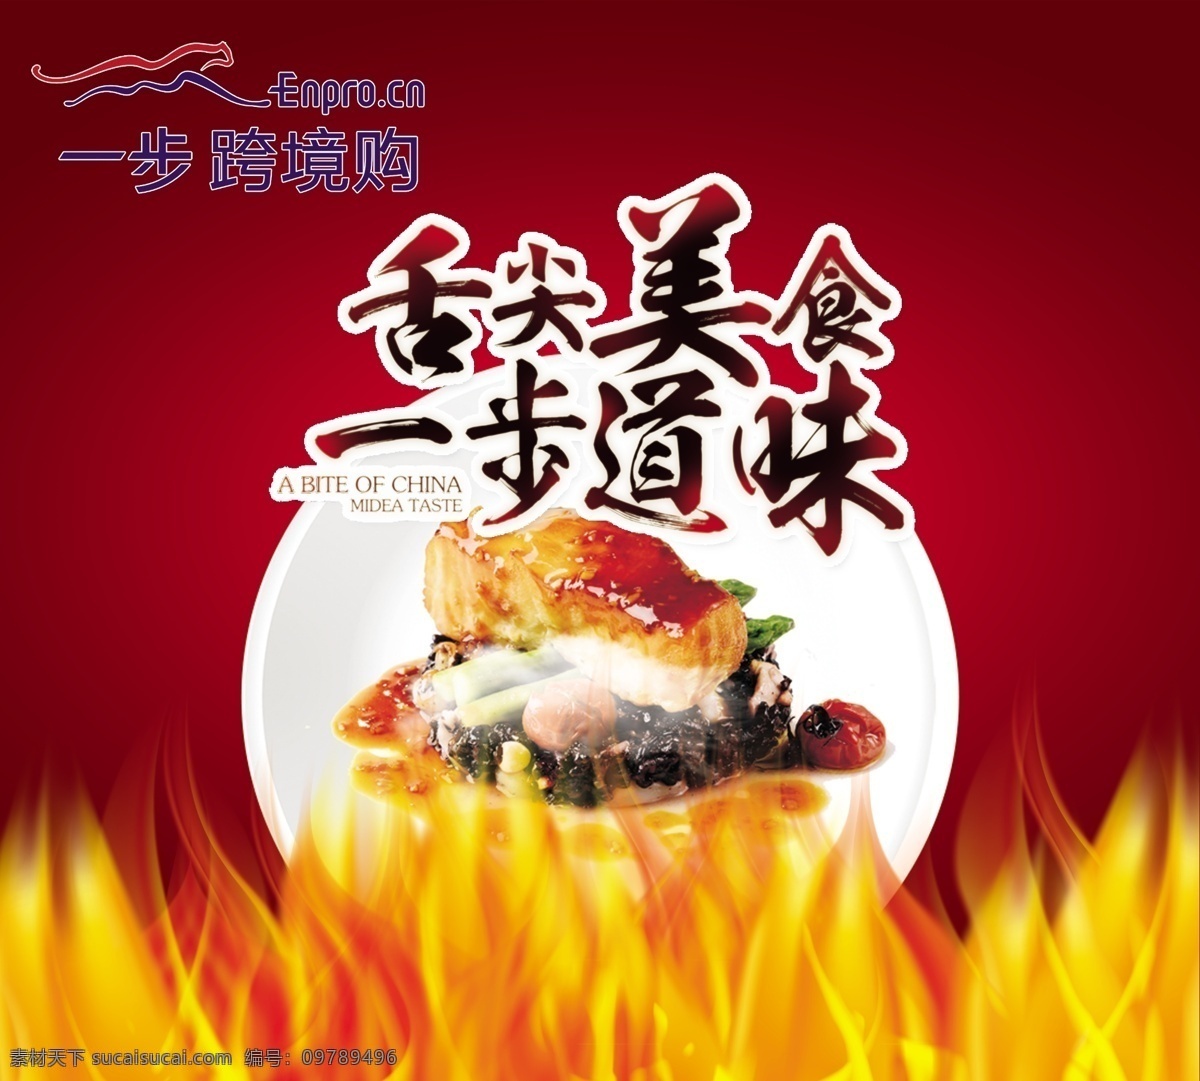 海鲜宣传画 铁板烧 海鲜 火焰 牛排 配菜